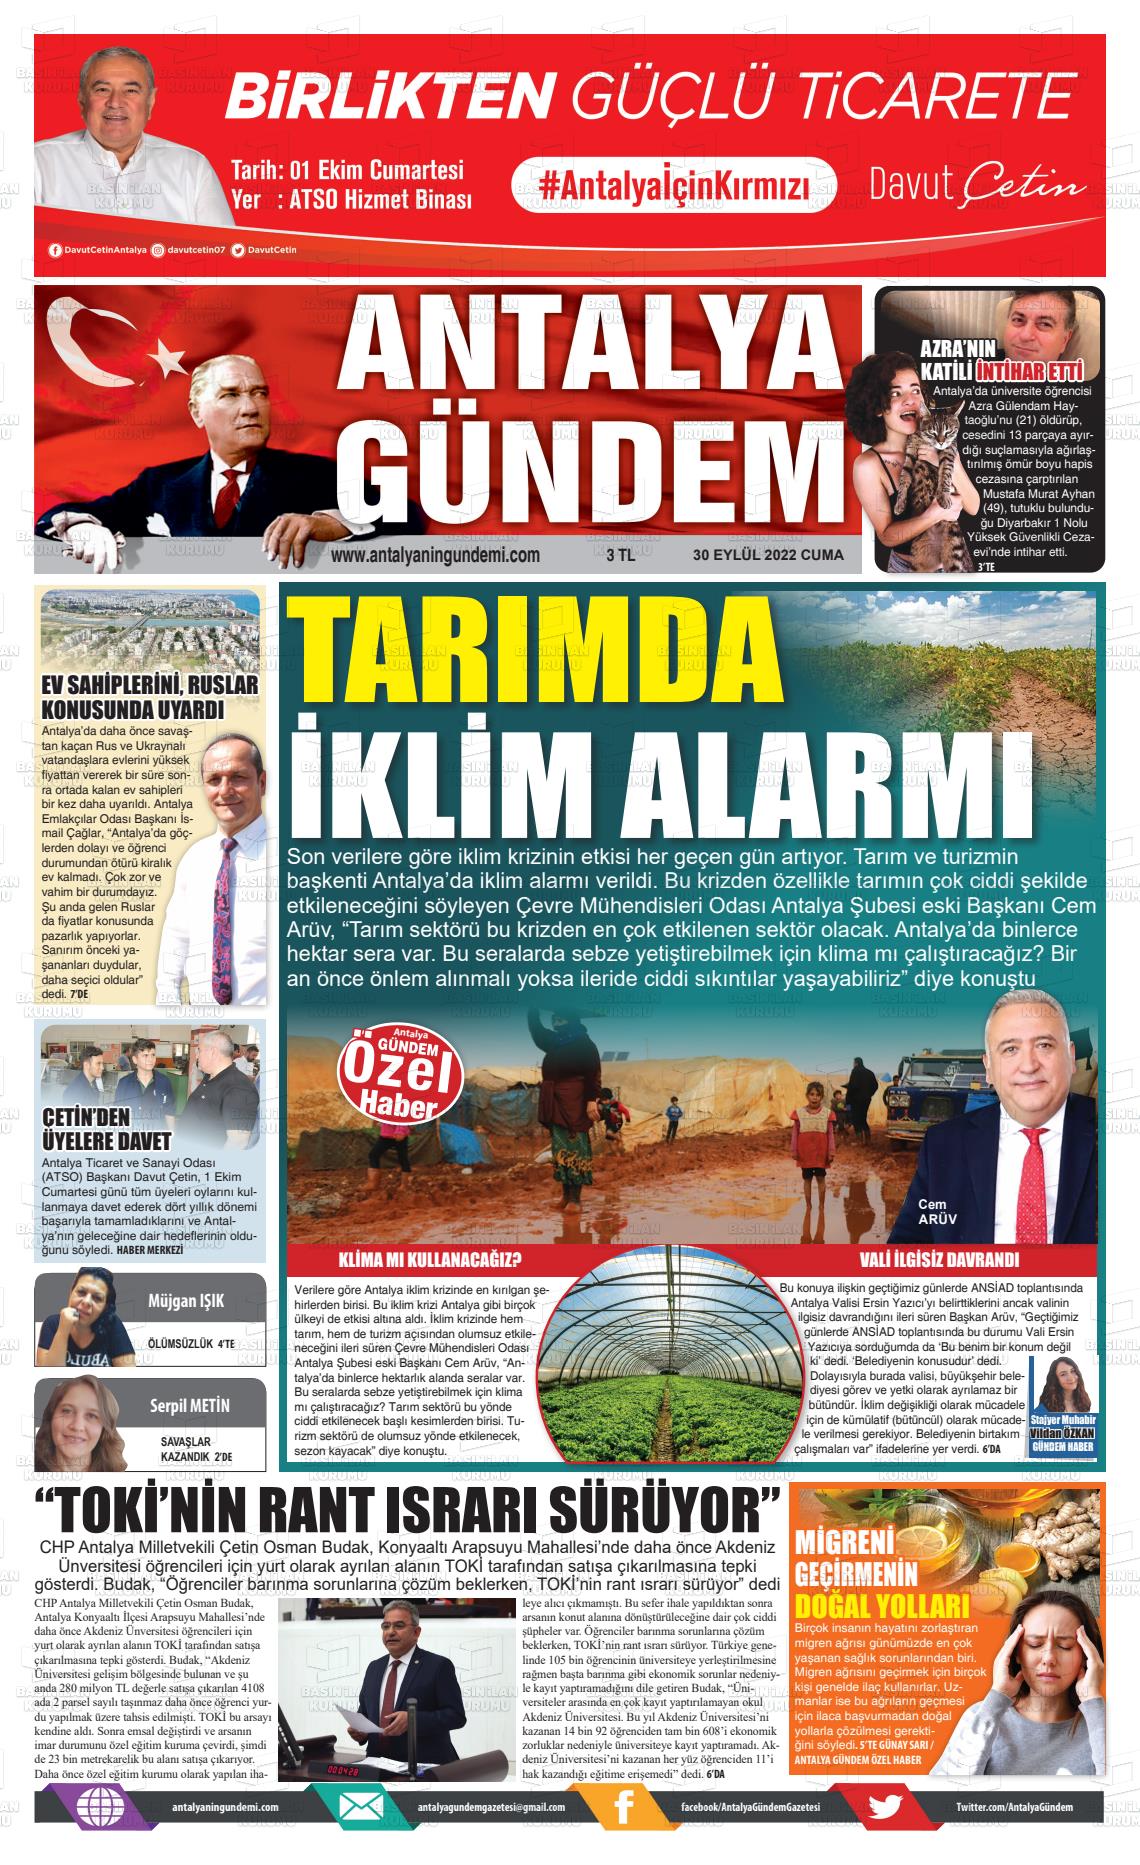 30 Eylül 2022 Antalya'nın Gündemi Gazete Manşeti